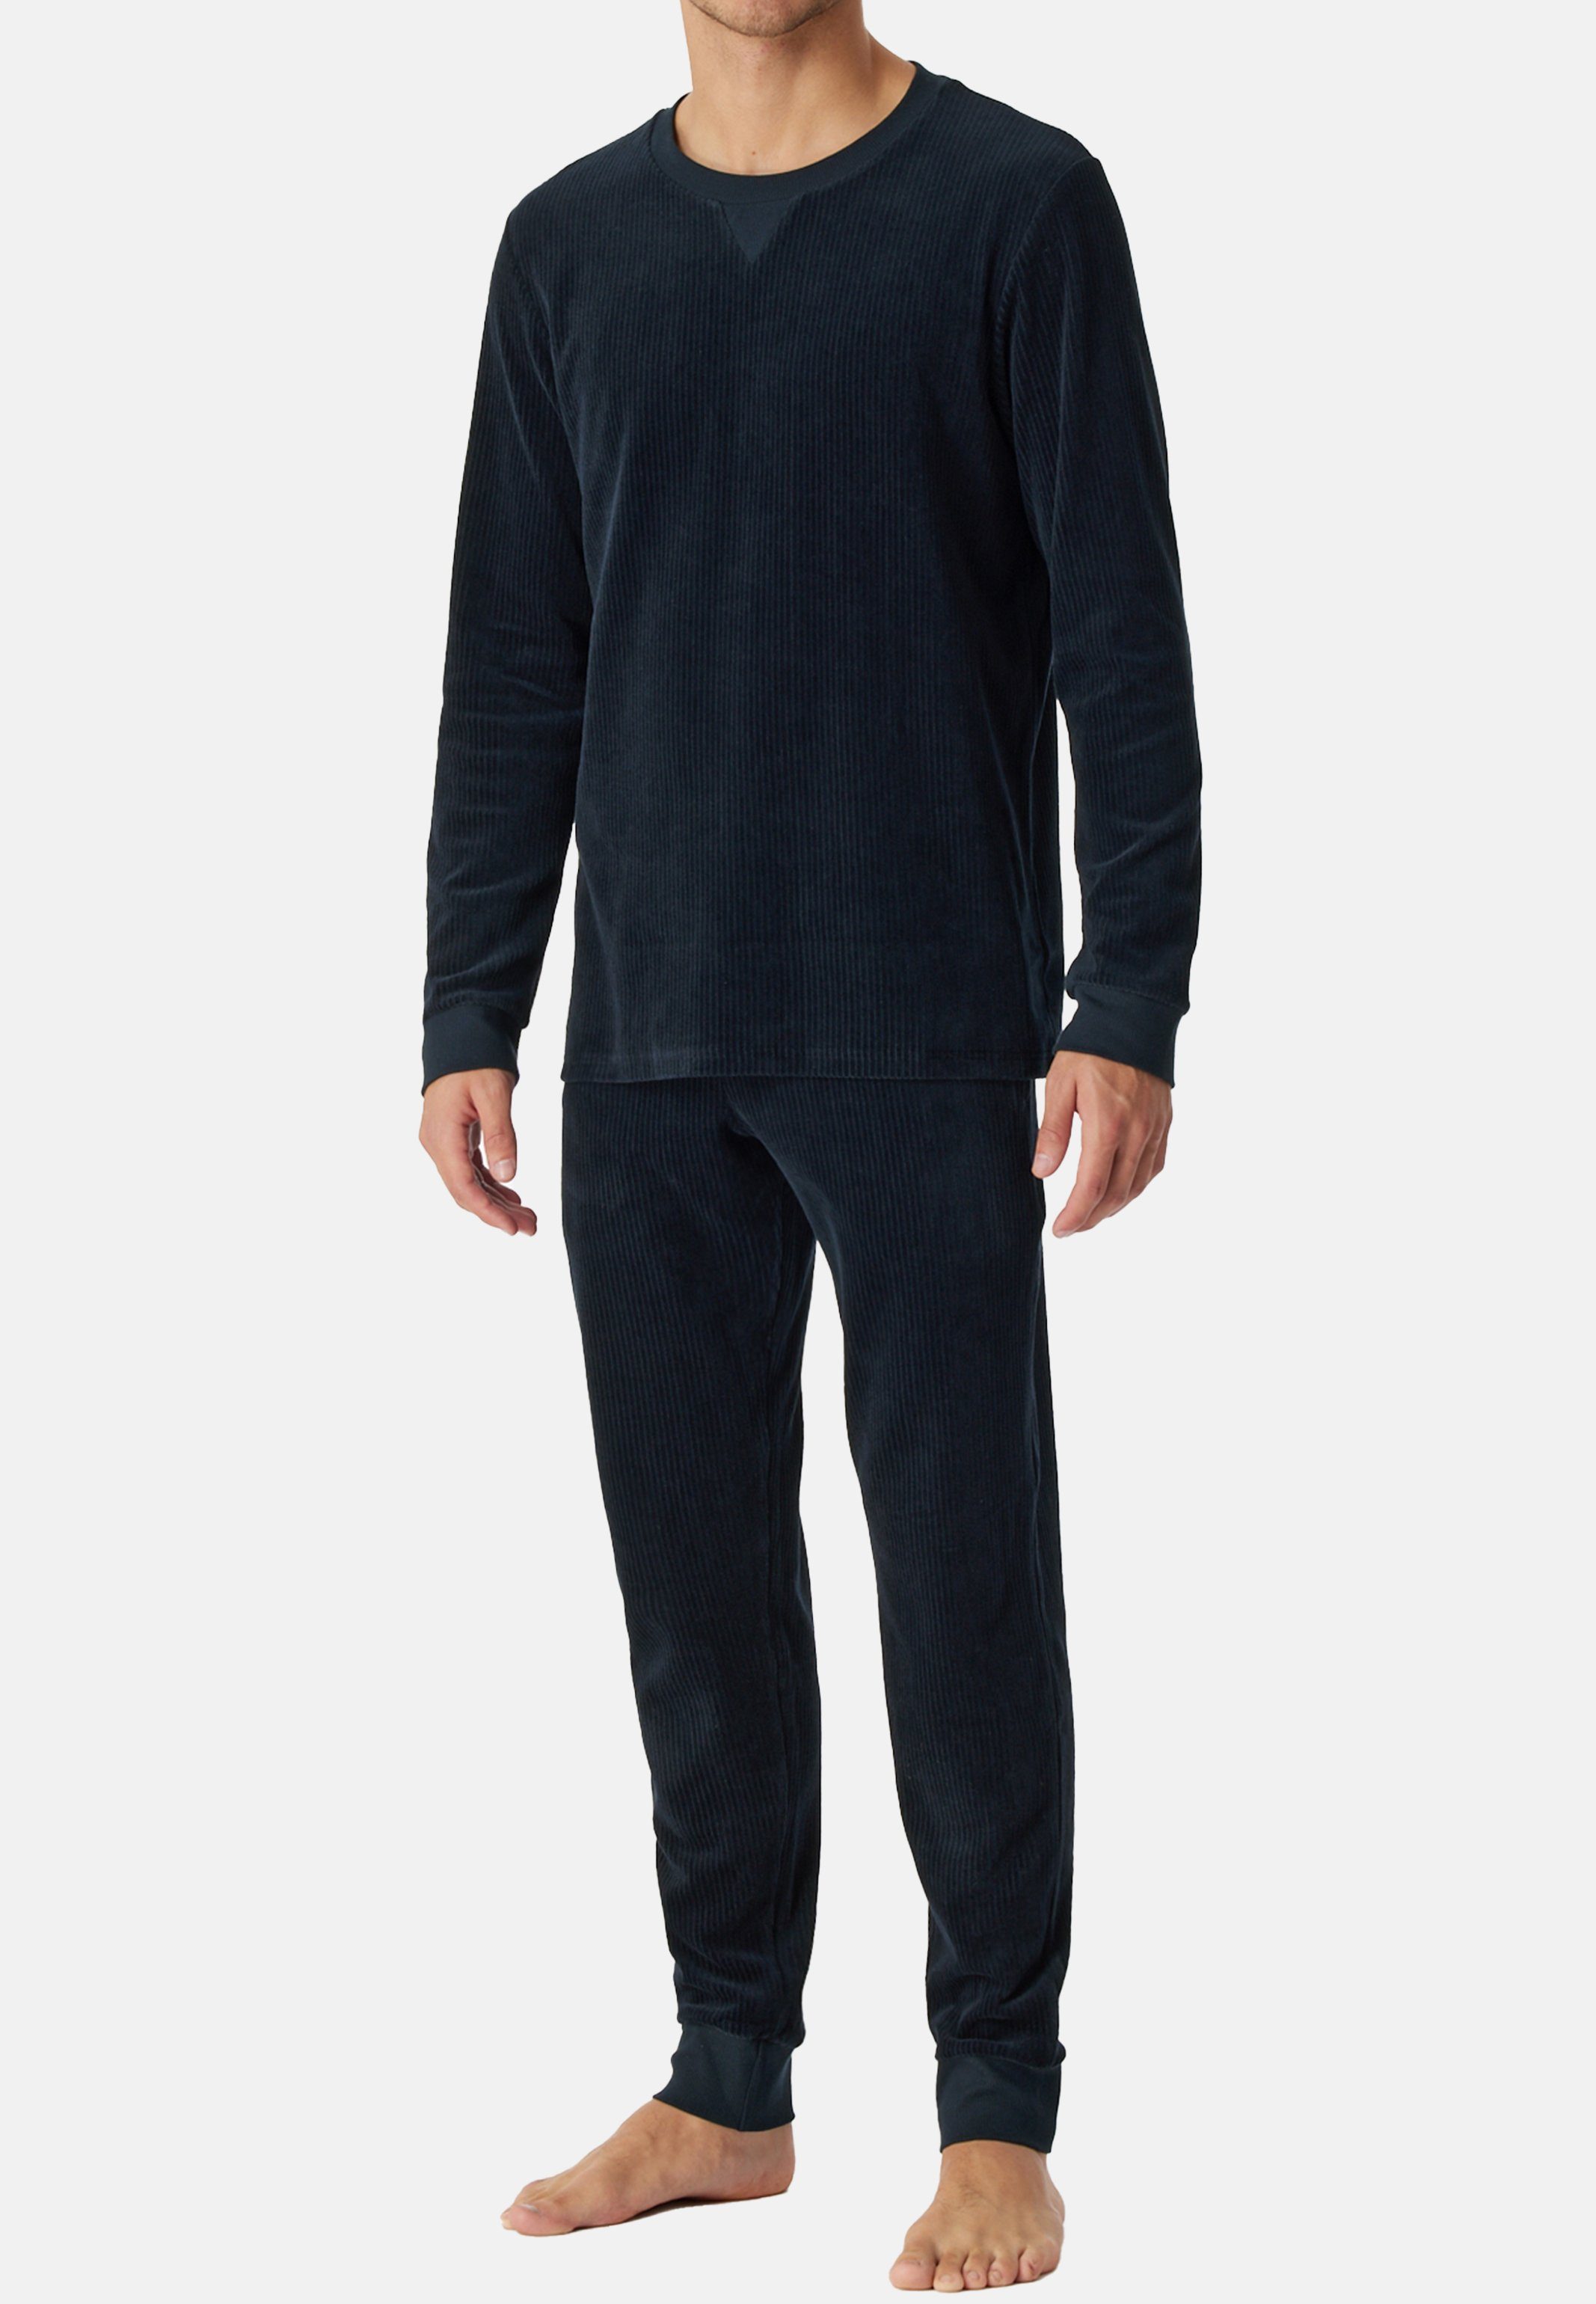 Zum niedrigsten Preis erhältlich Schiesser Pyjama Warming Nightwear Velour - Haut Nachtblau Baumwolle Angenehm (Set, - auf Schlafanzug tlg) 2 der